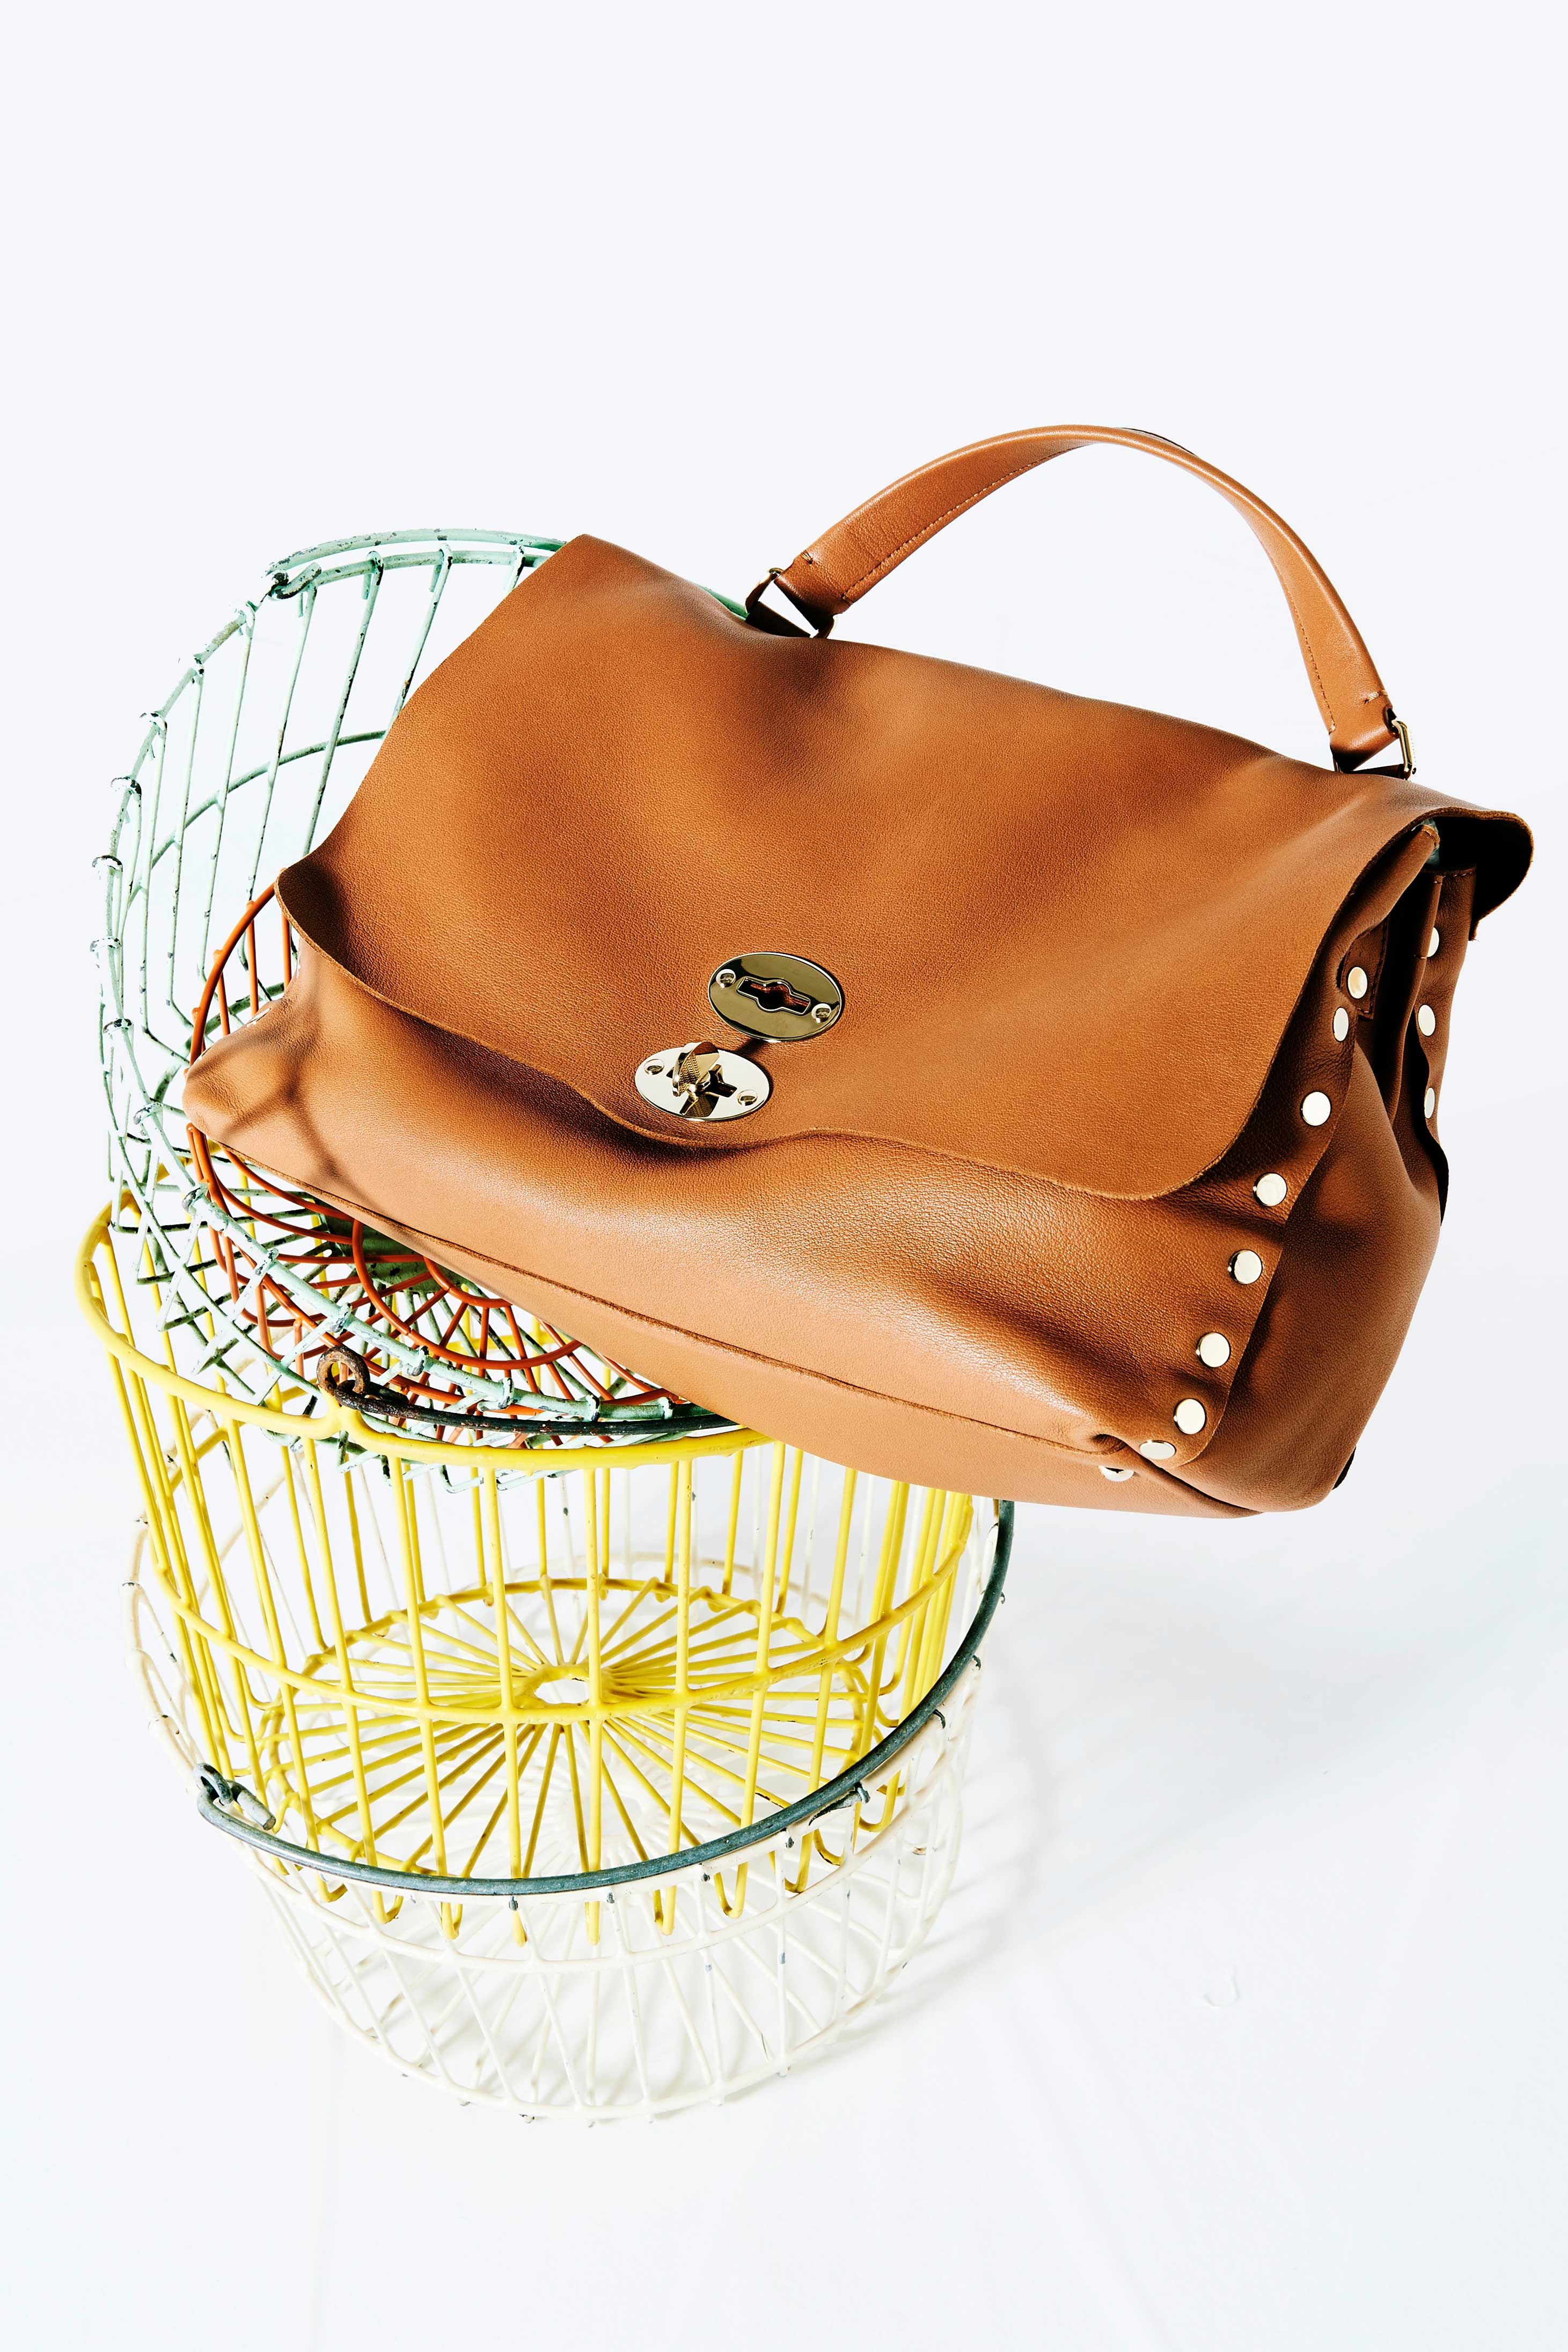 ザネラートが手がける上質なバッグ「ポスティーナ」の、10周年記念特別 